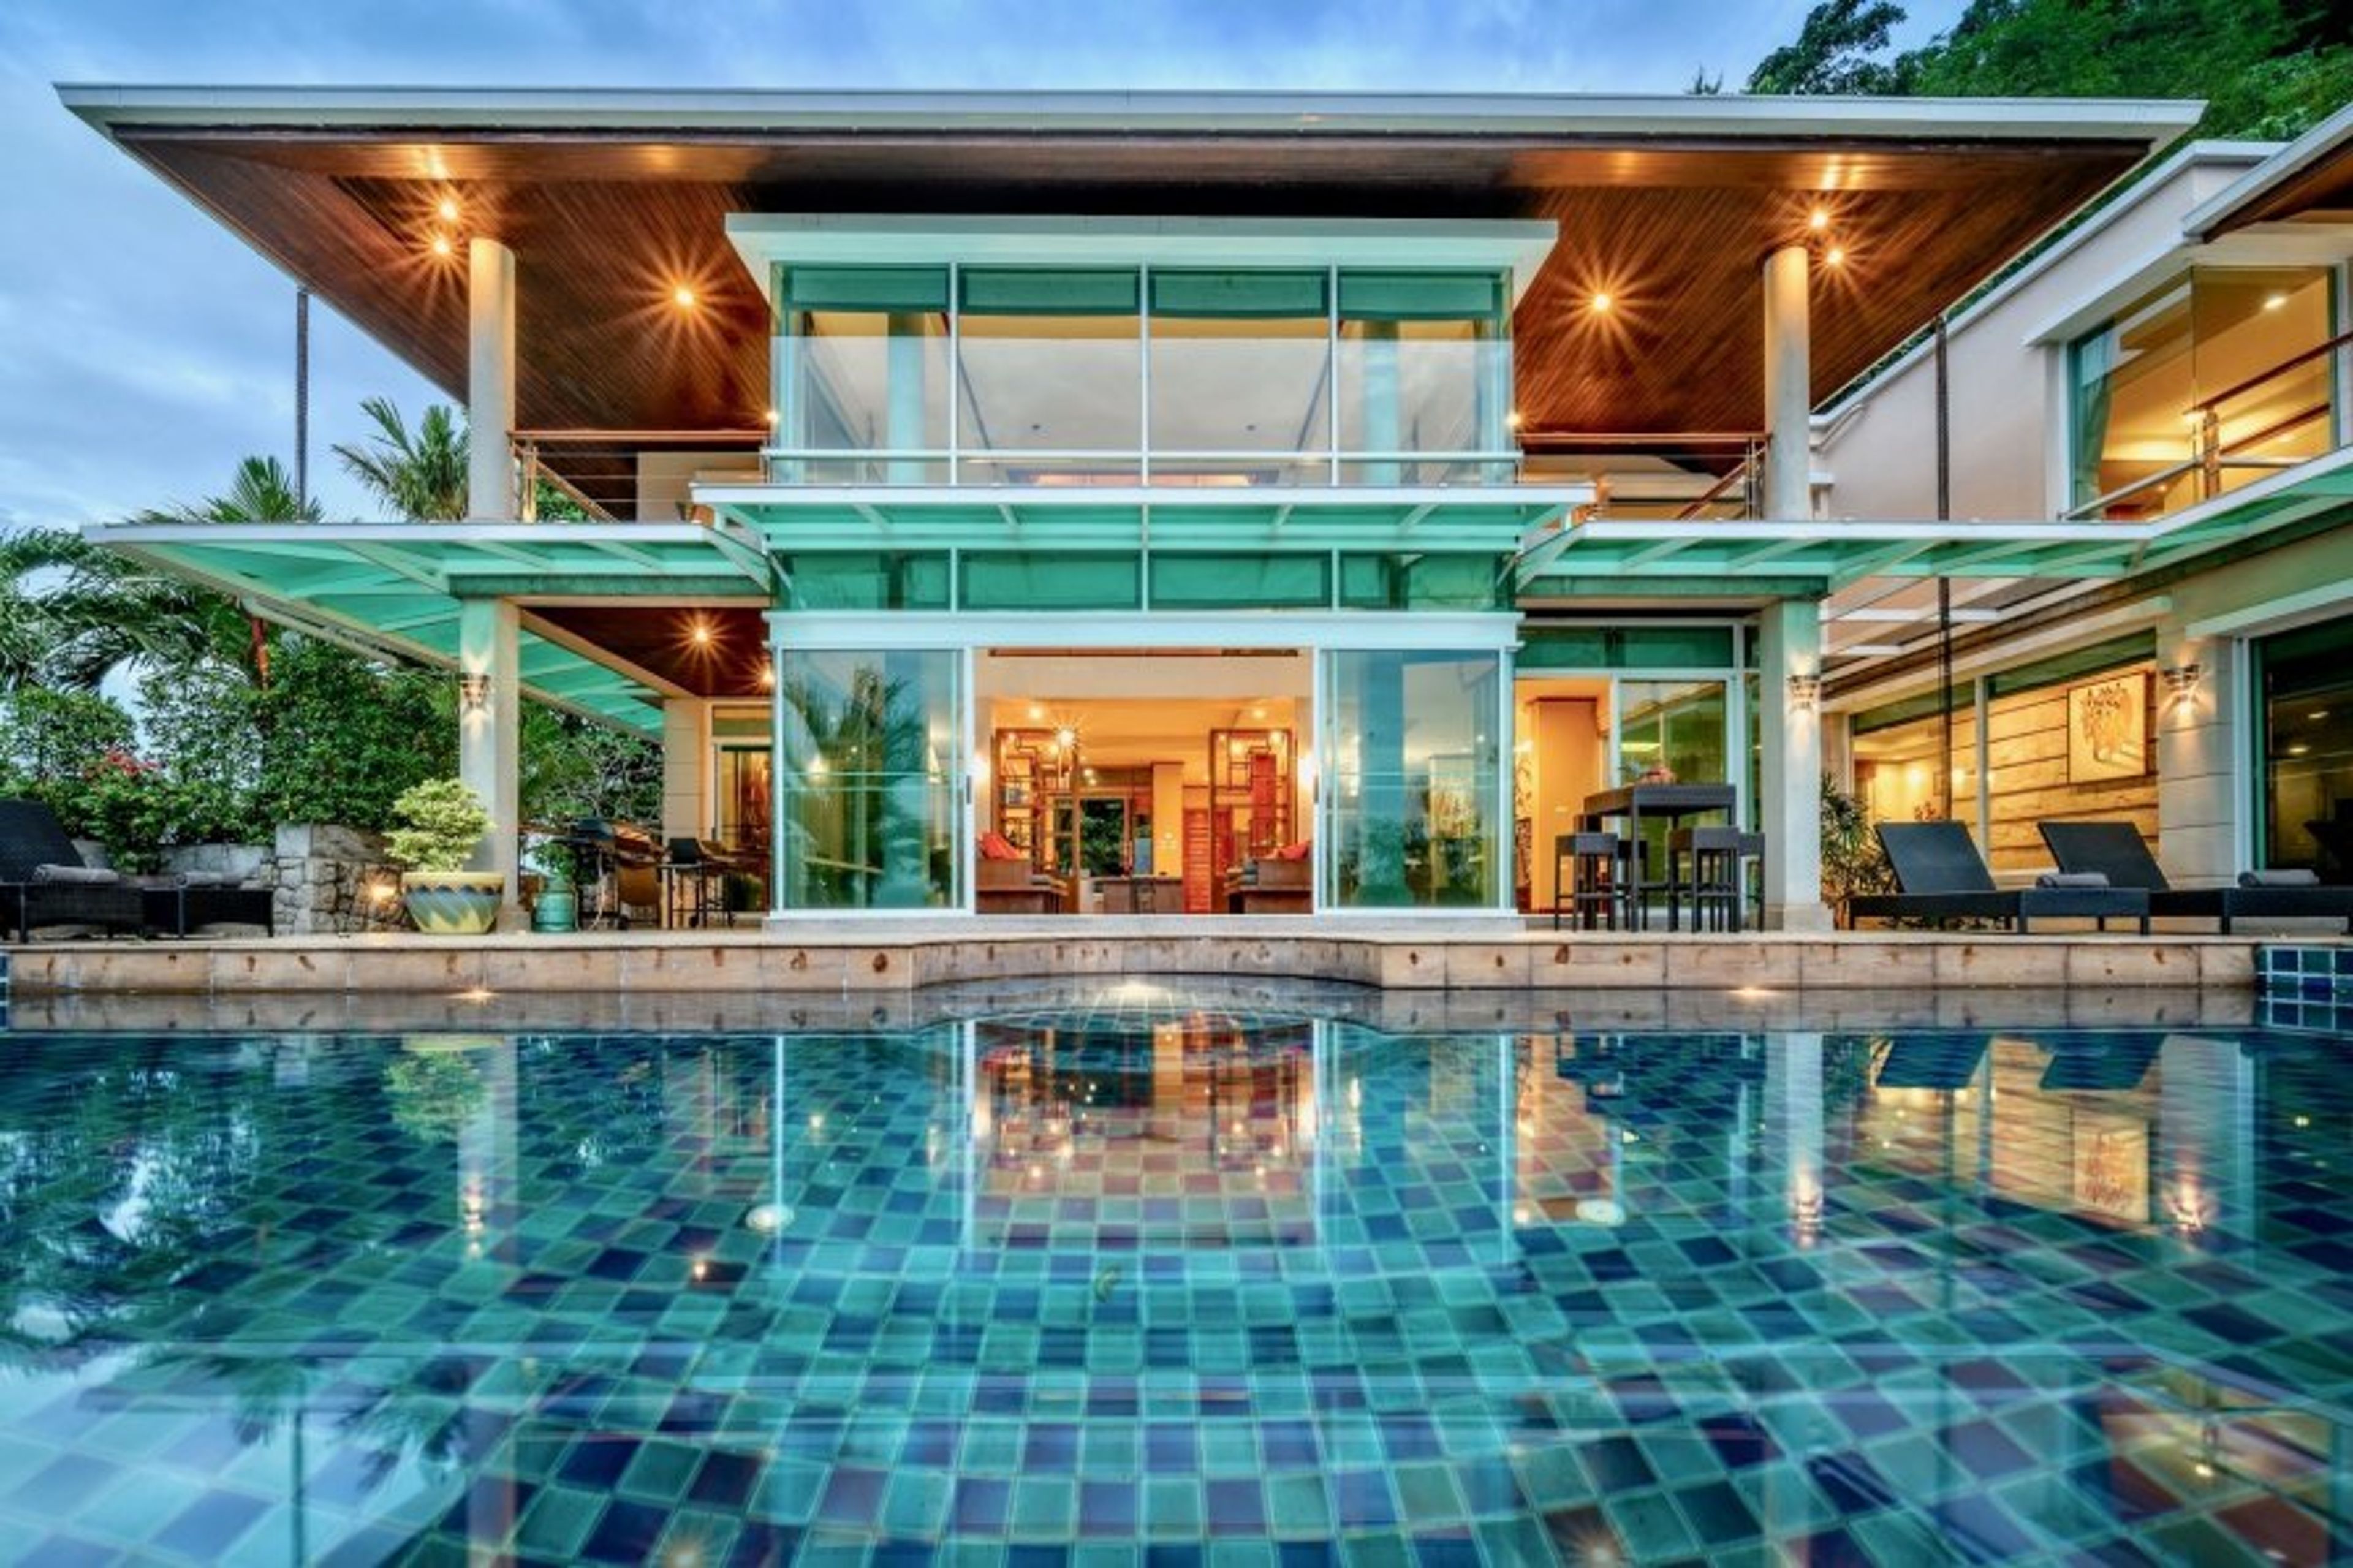 Modern luxury architect-designed house